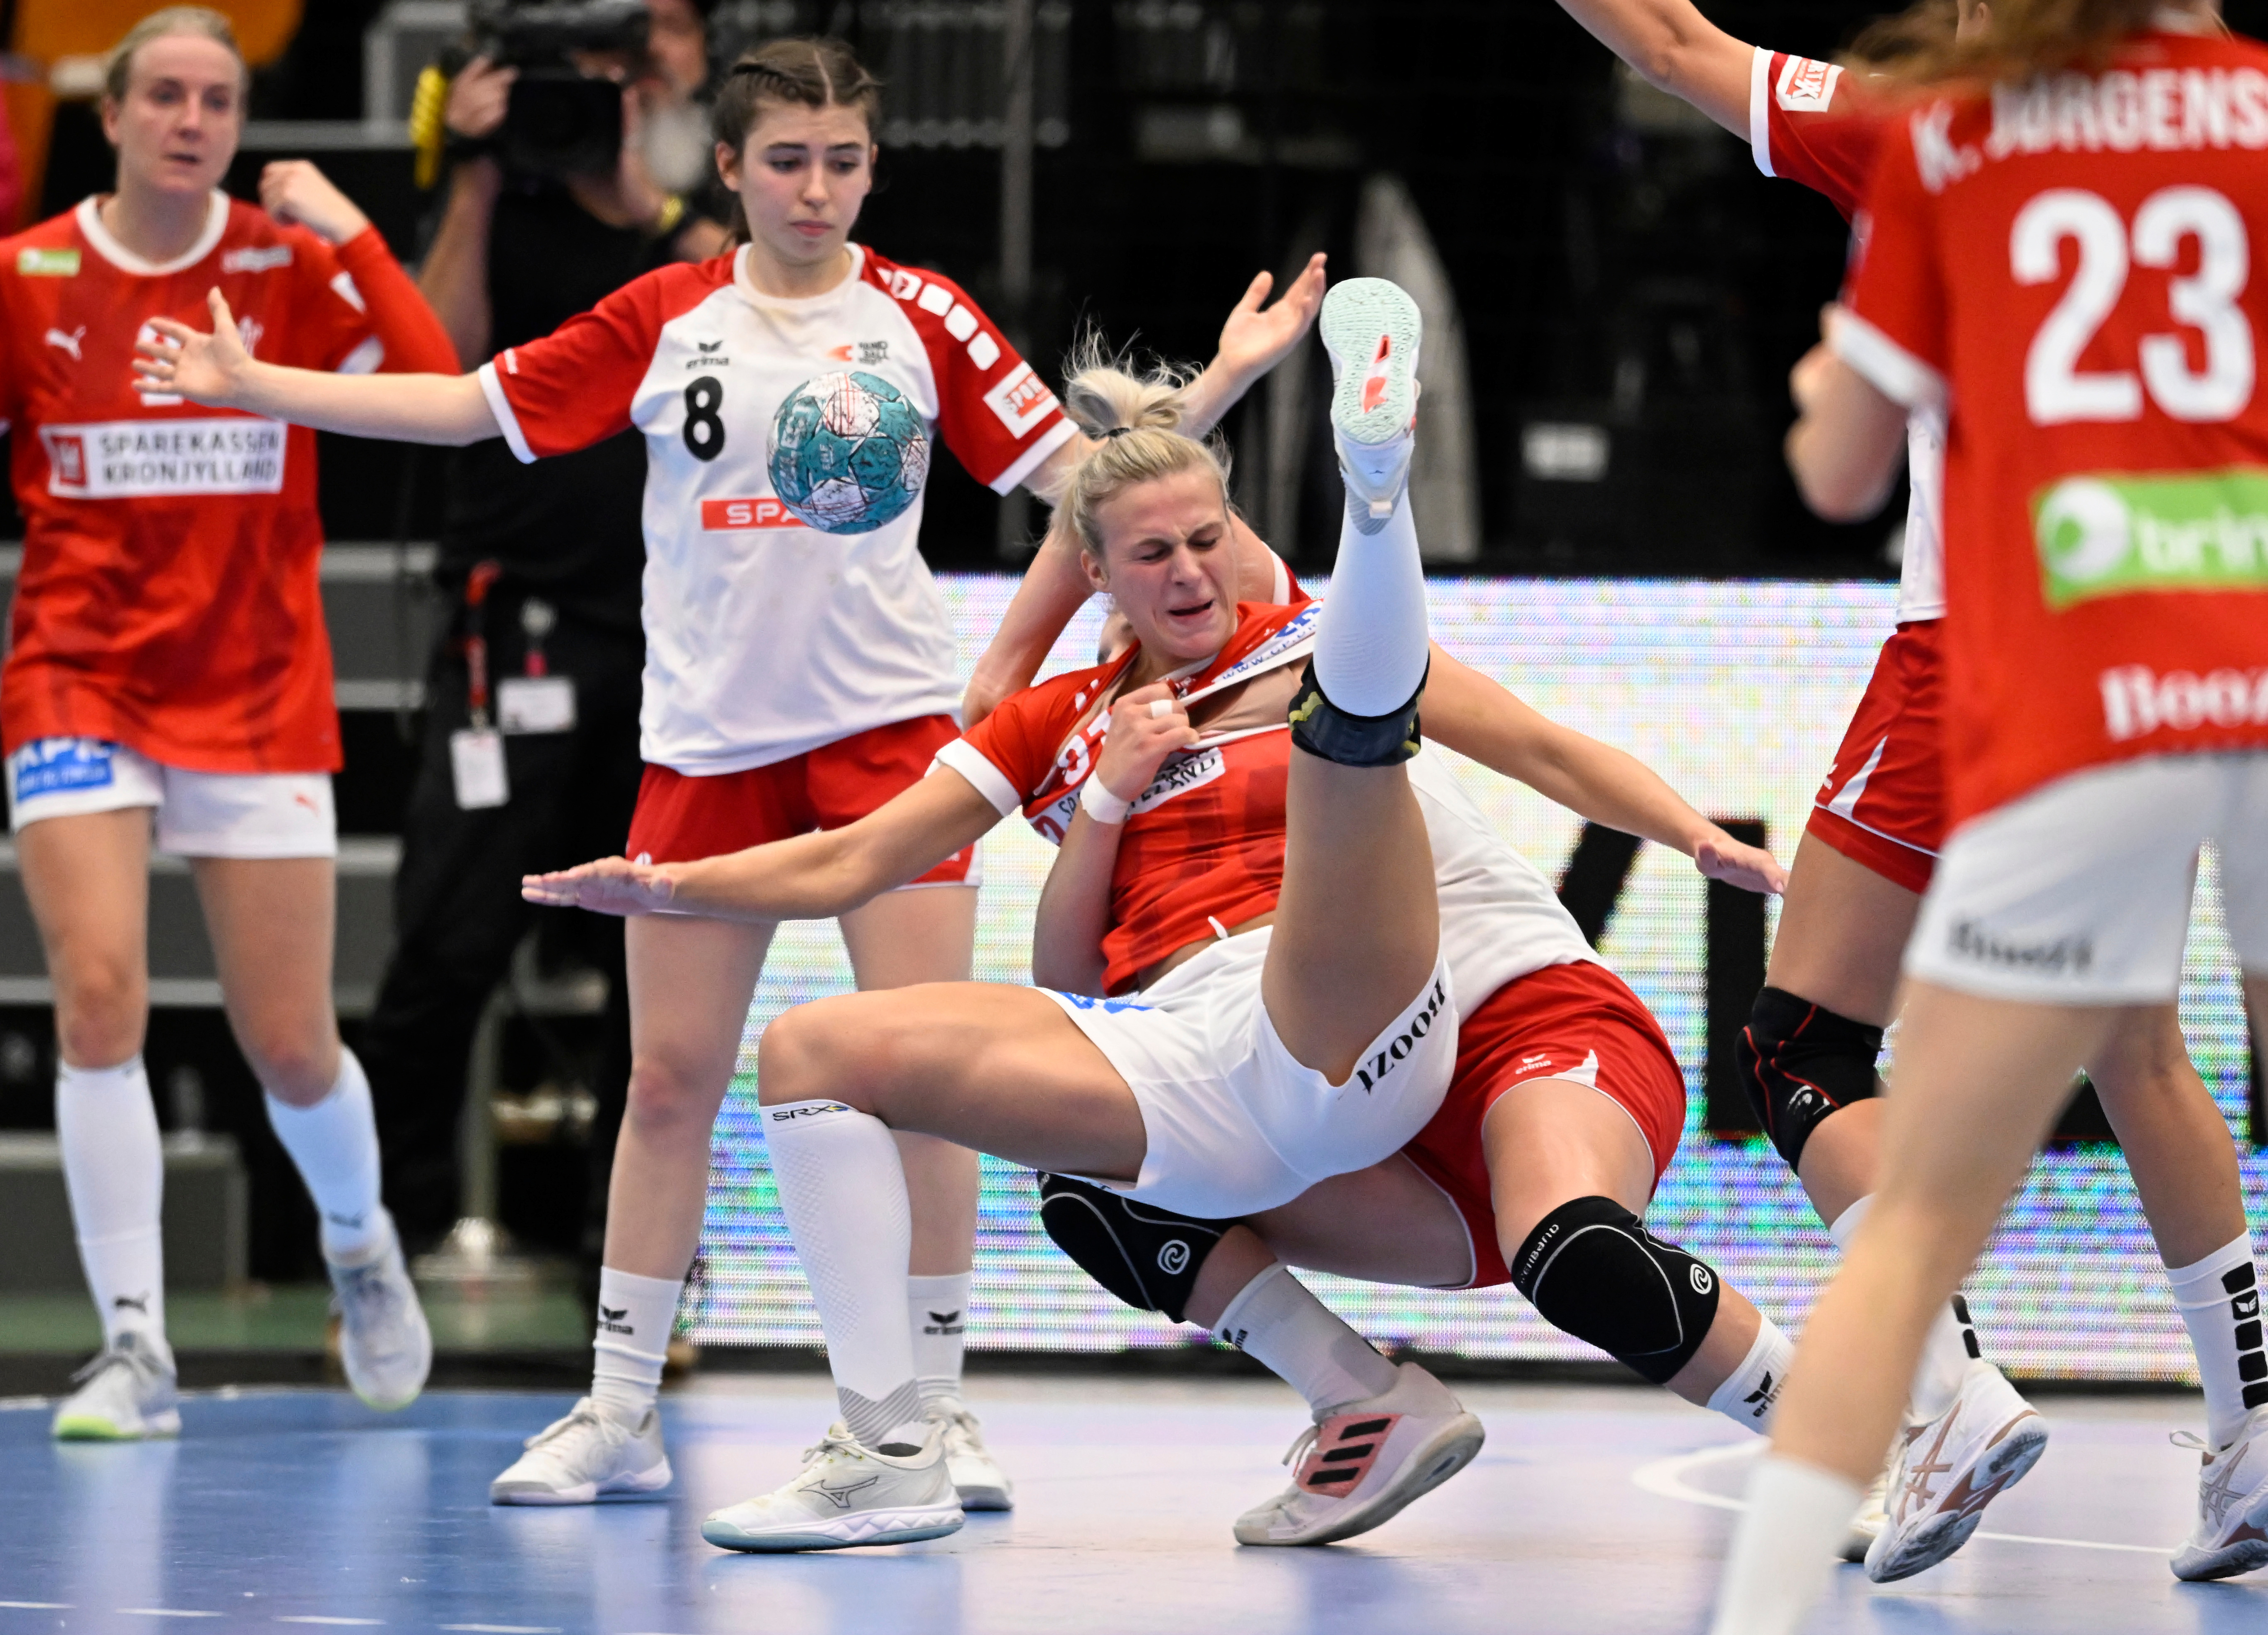 Golden League Schweizerinnen unterliegen Dänemark nach toller erster Halbzeit